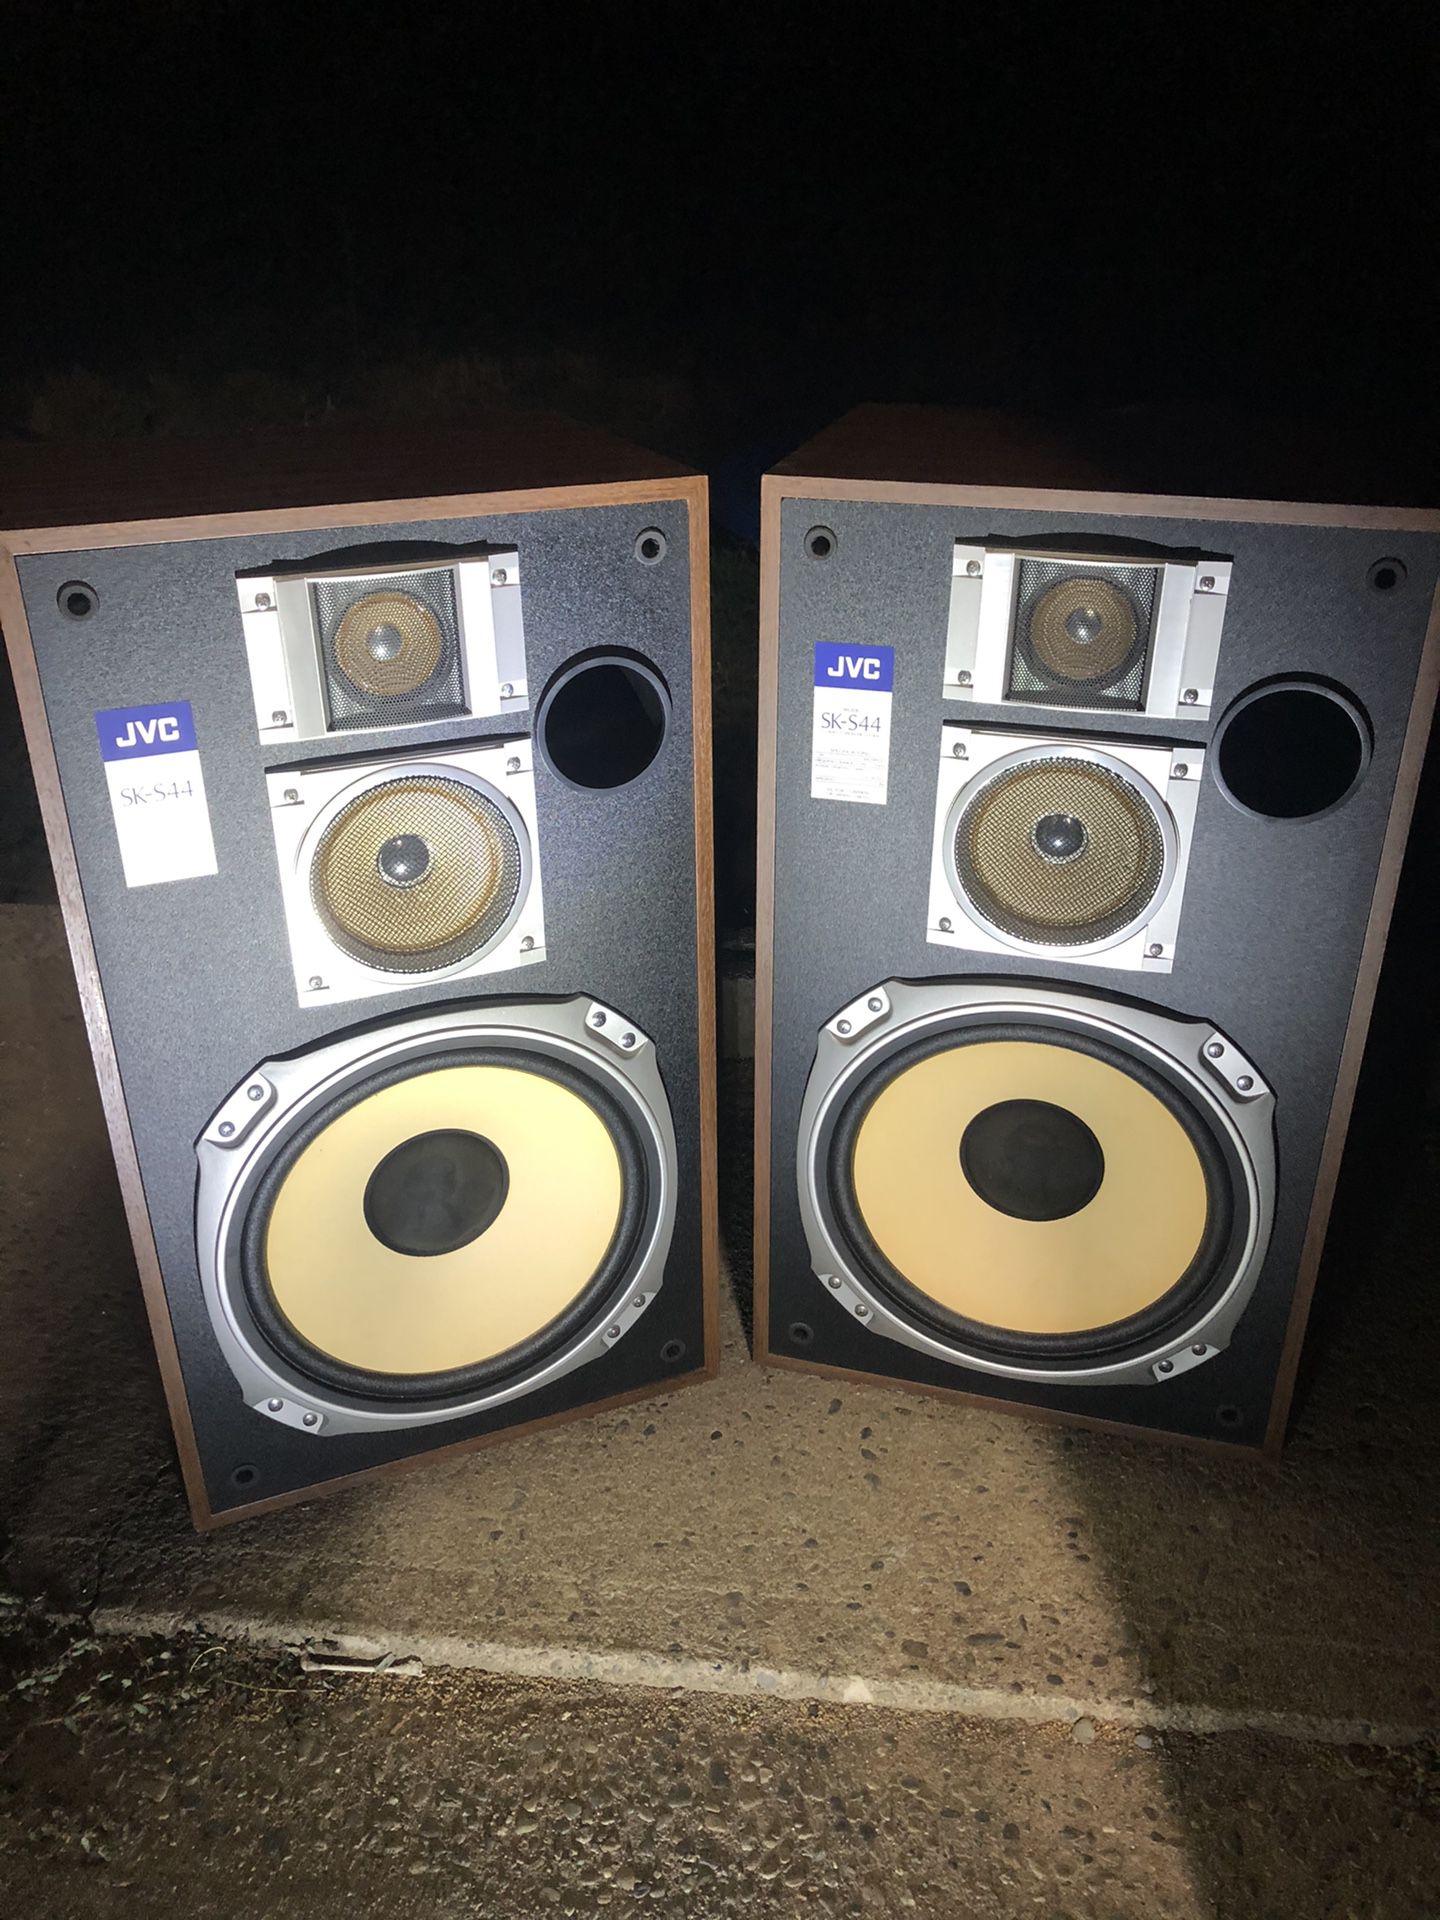 JVC sk-s44 speakers